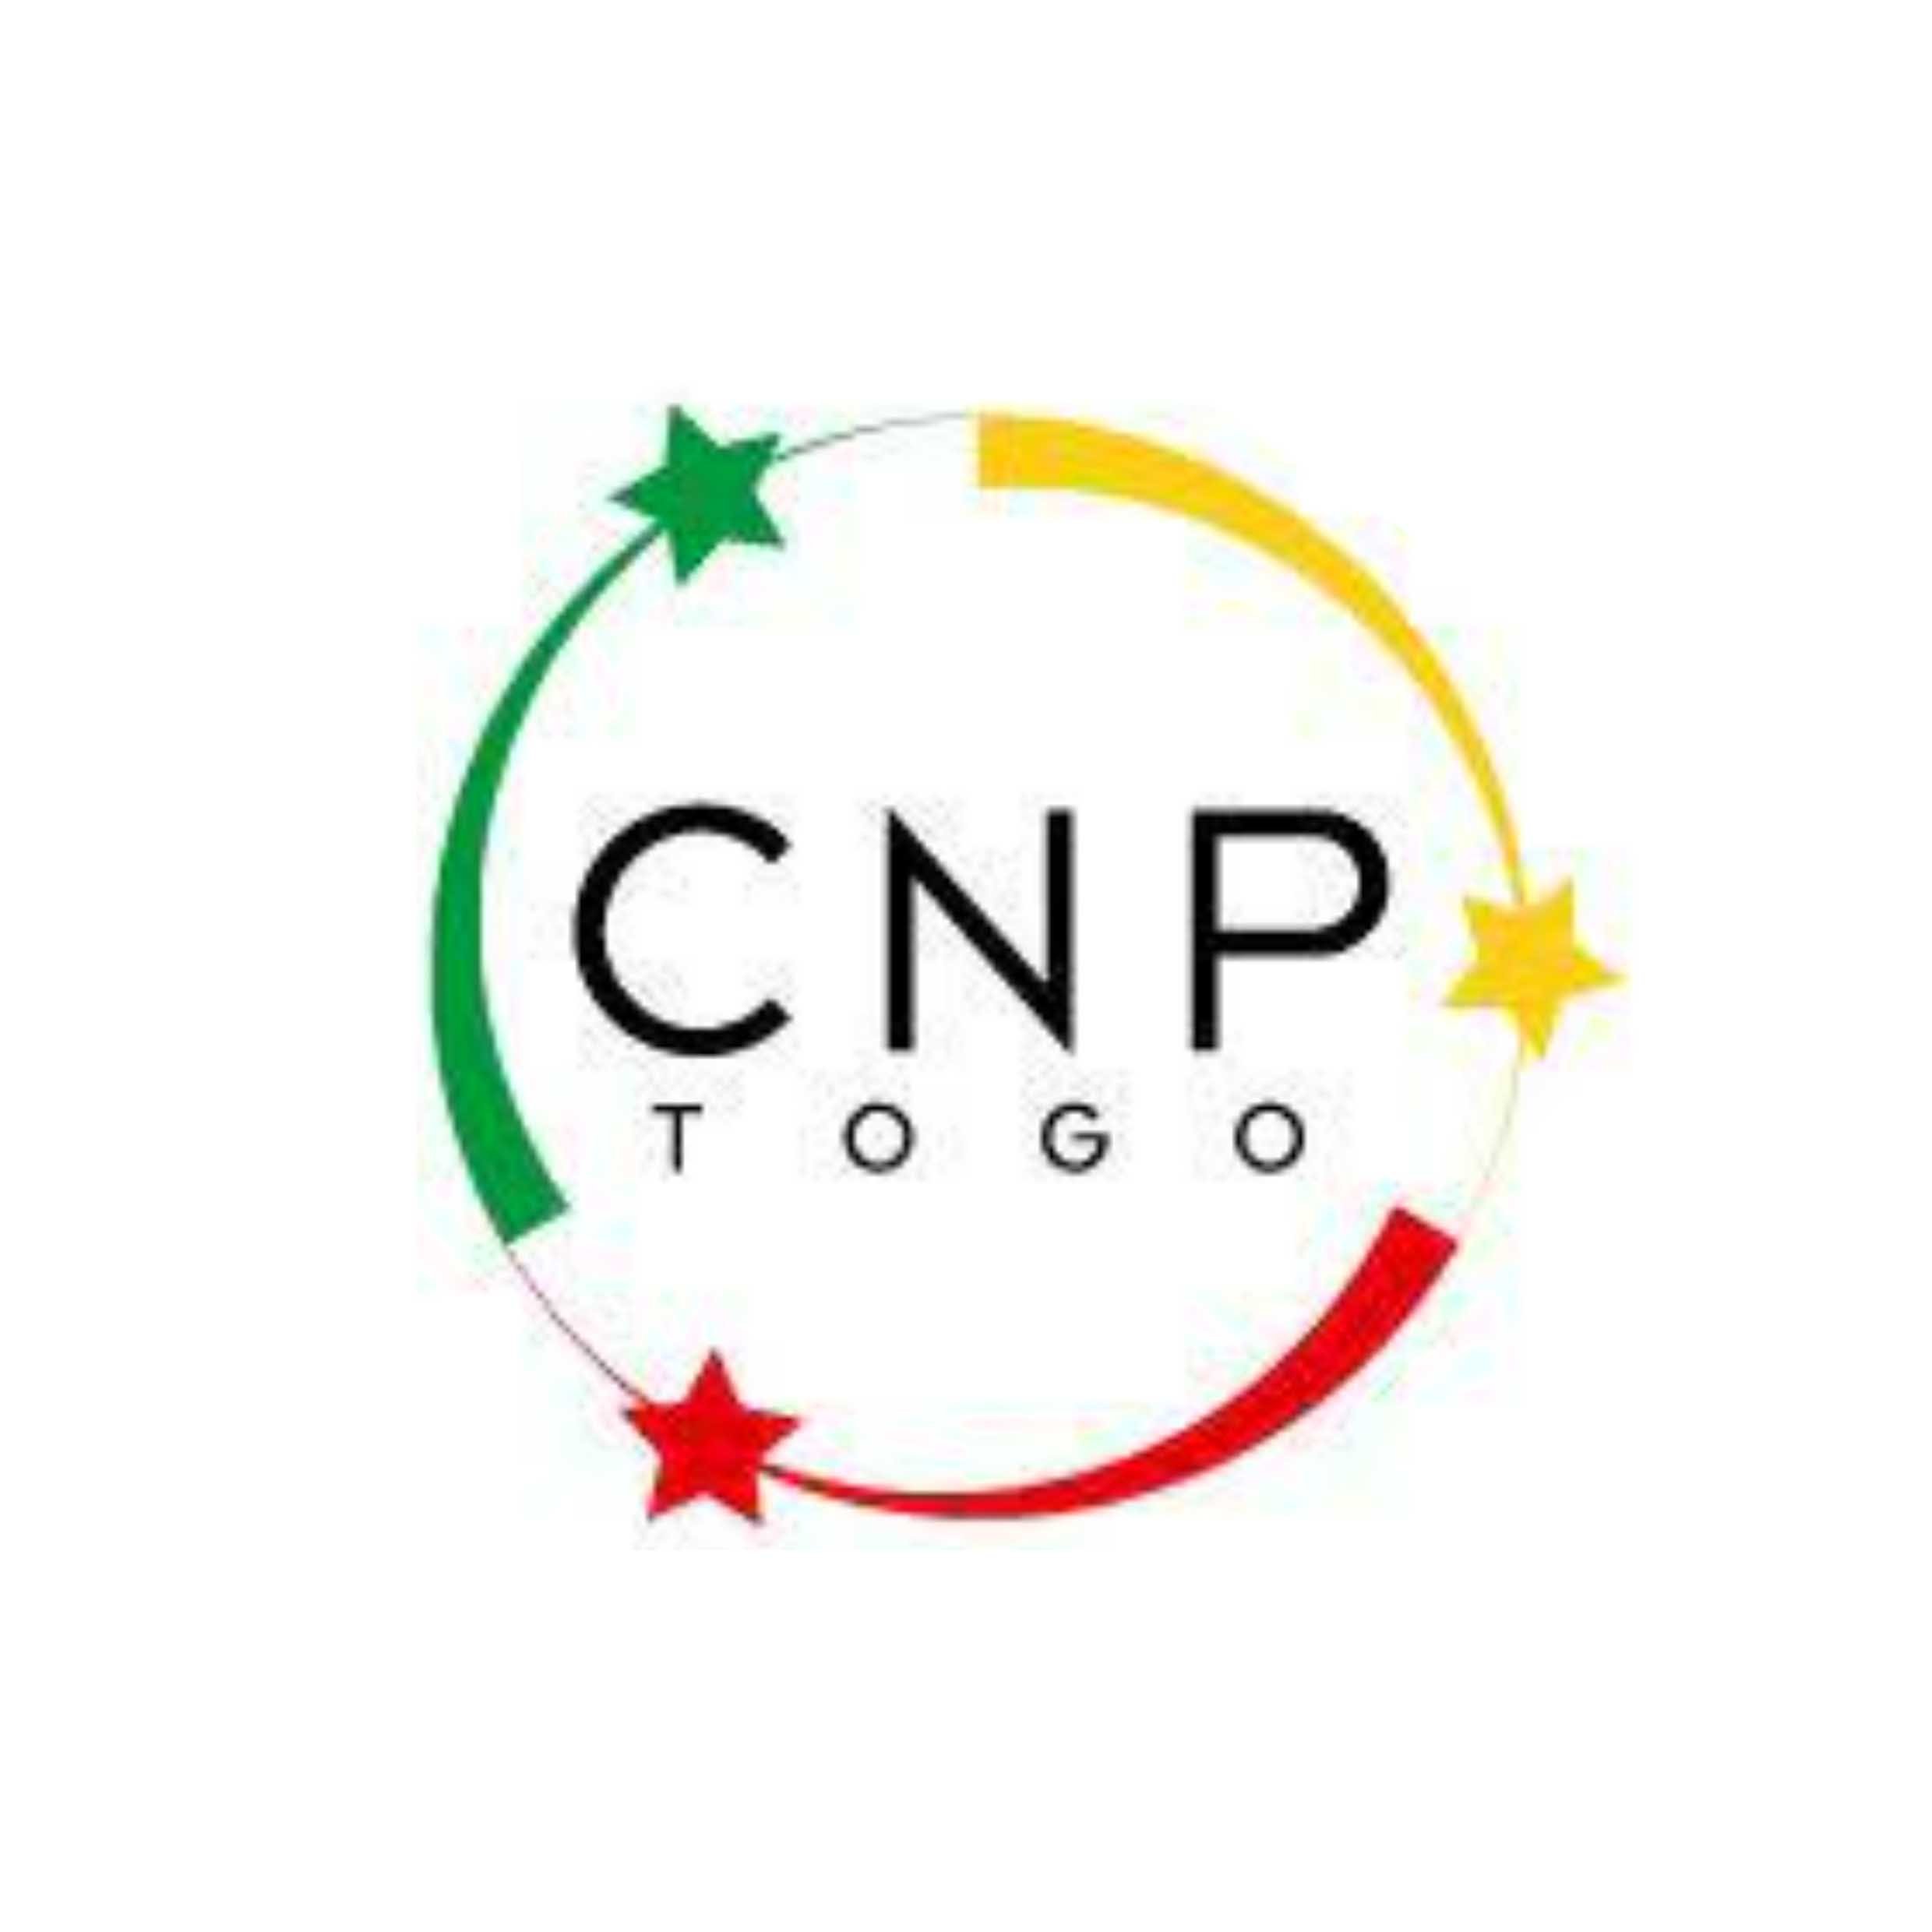 Togo CNP.jpg